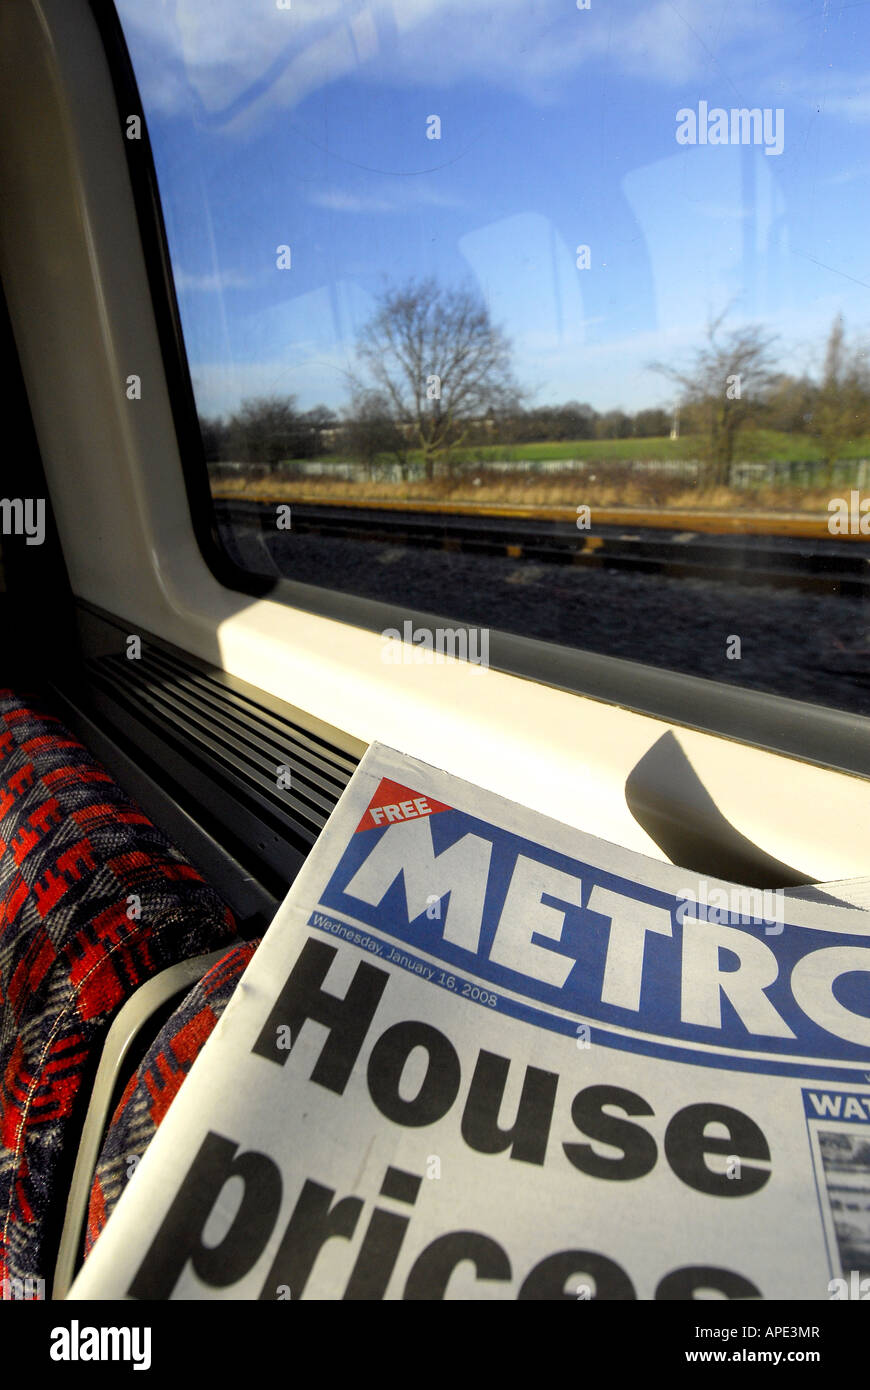 Journal quotidien de Londres le métro sur la ligne de métro central Tube Londres Banque D'Images